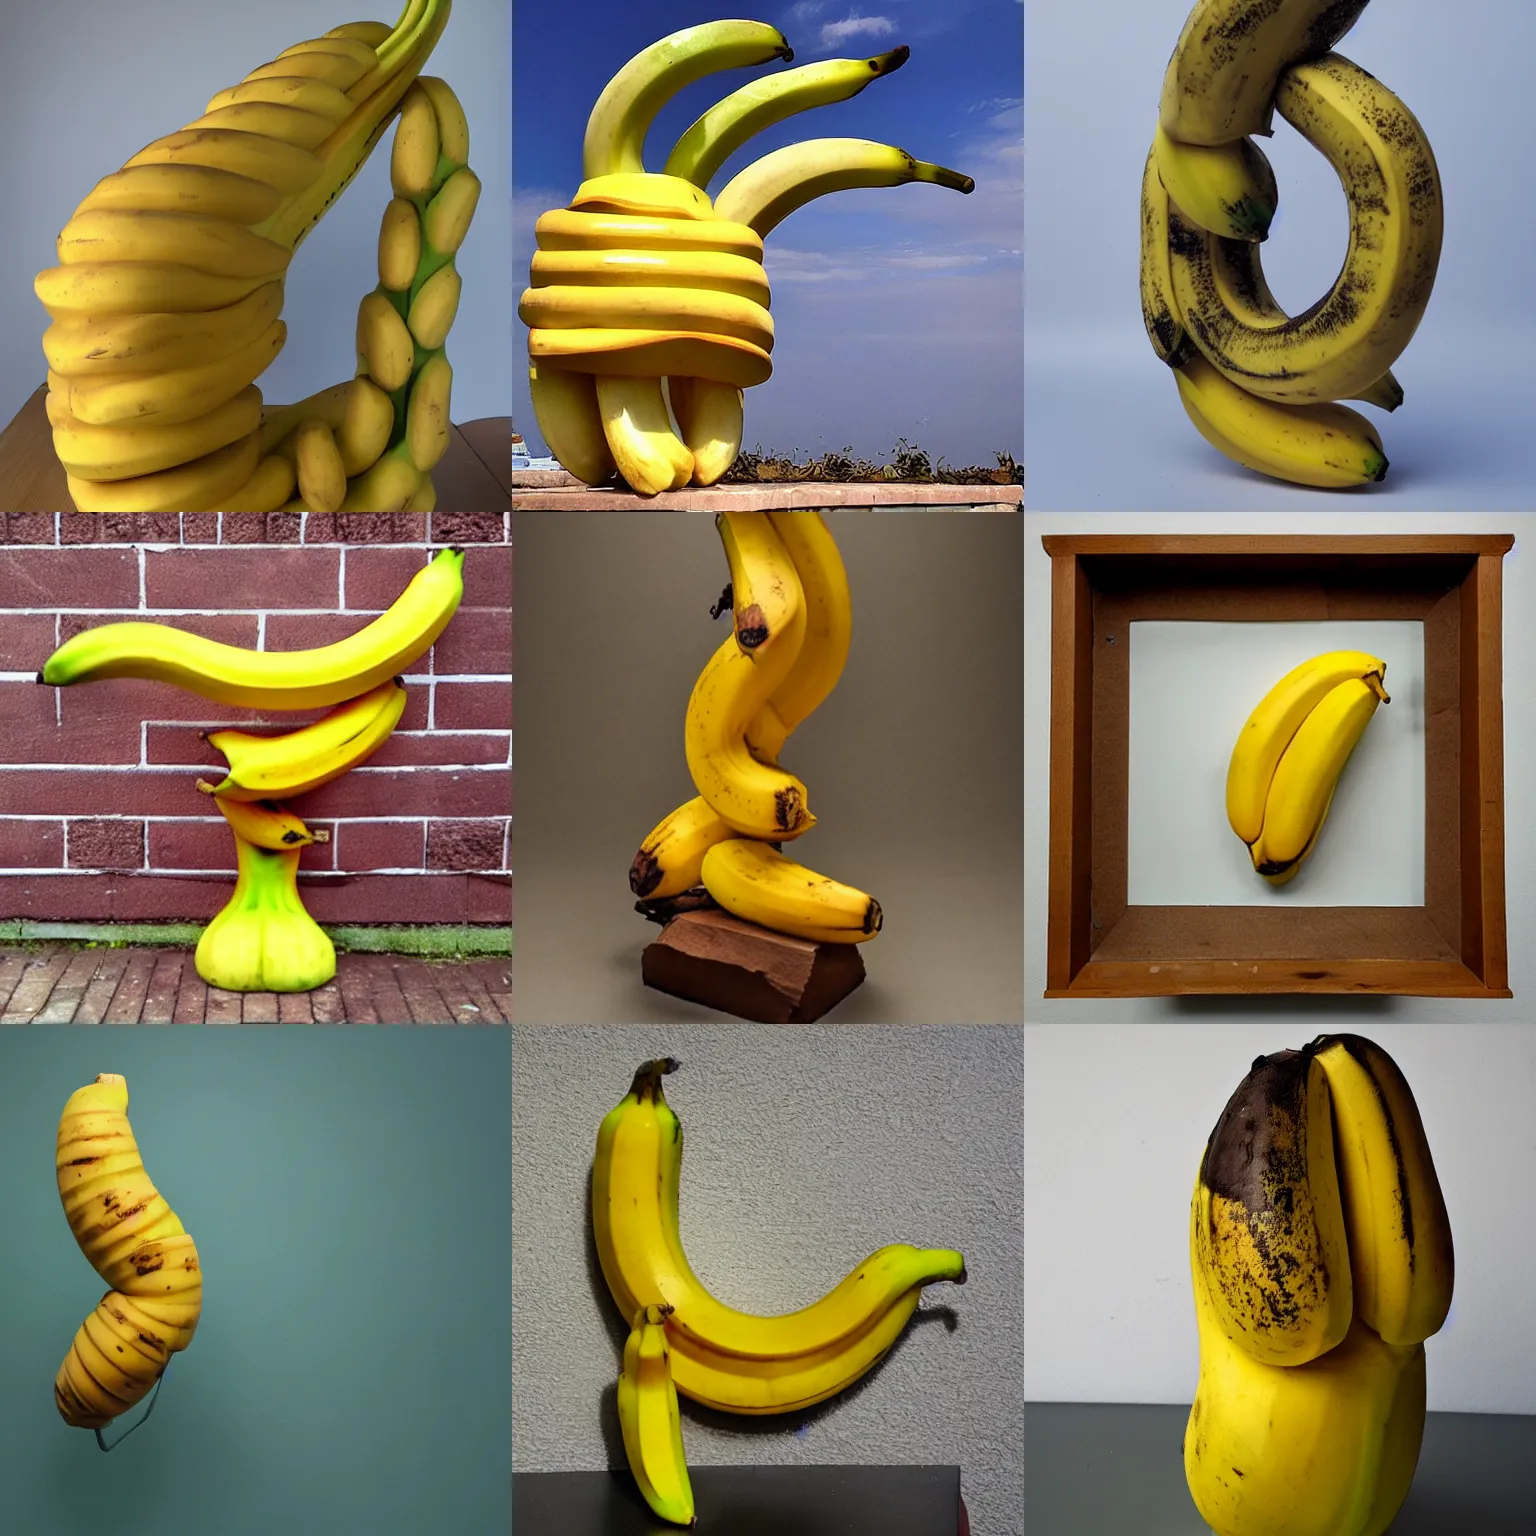 Prompt: surrealist sculpture of a banana